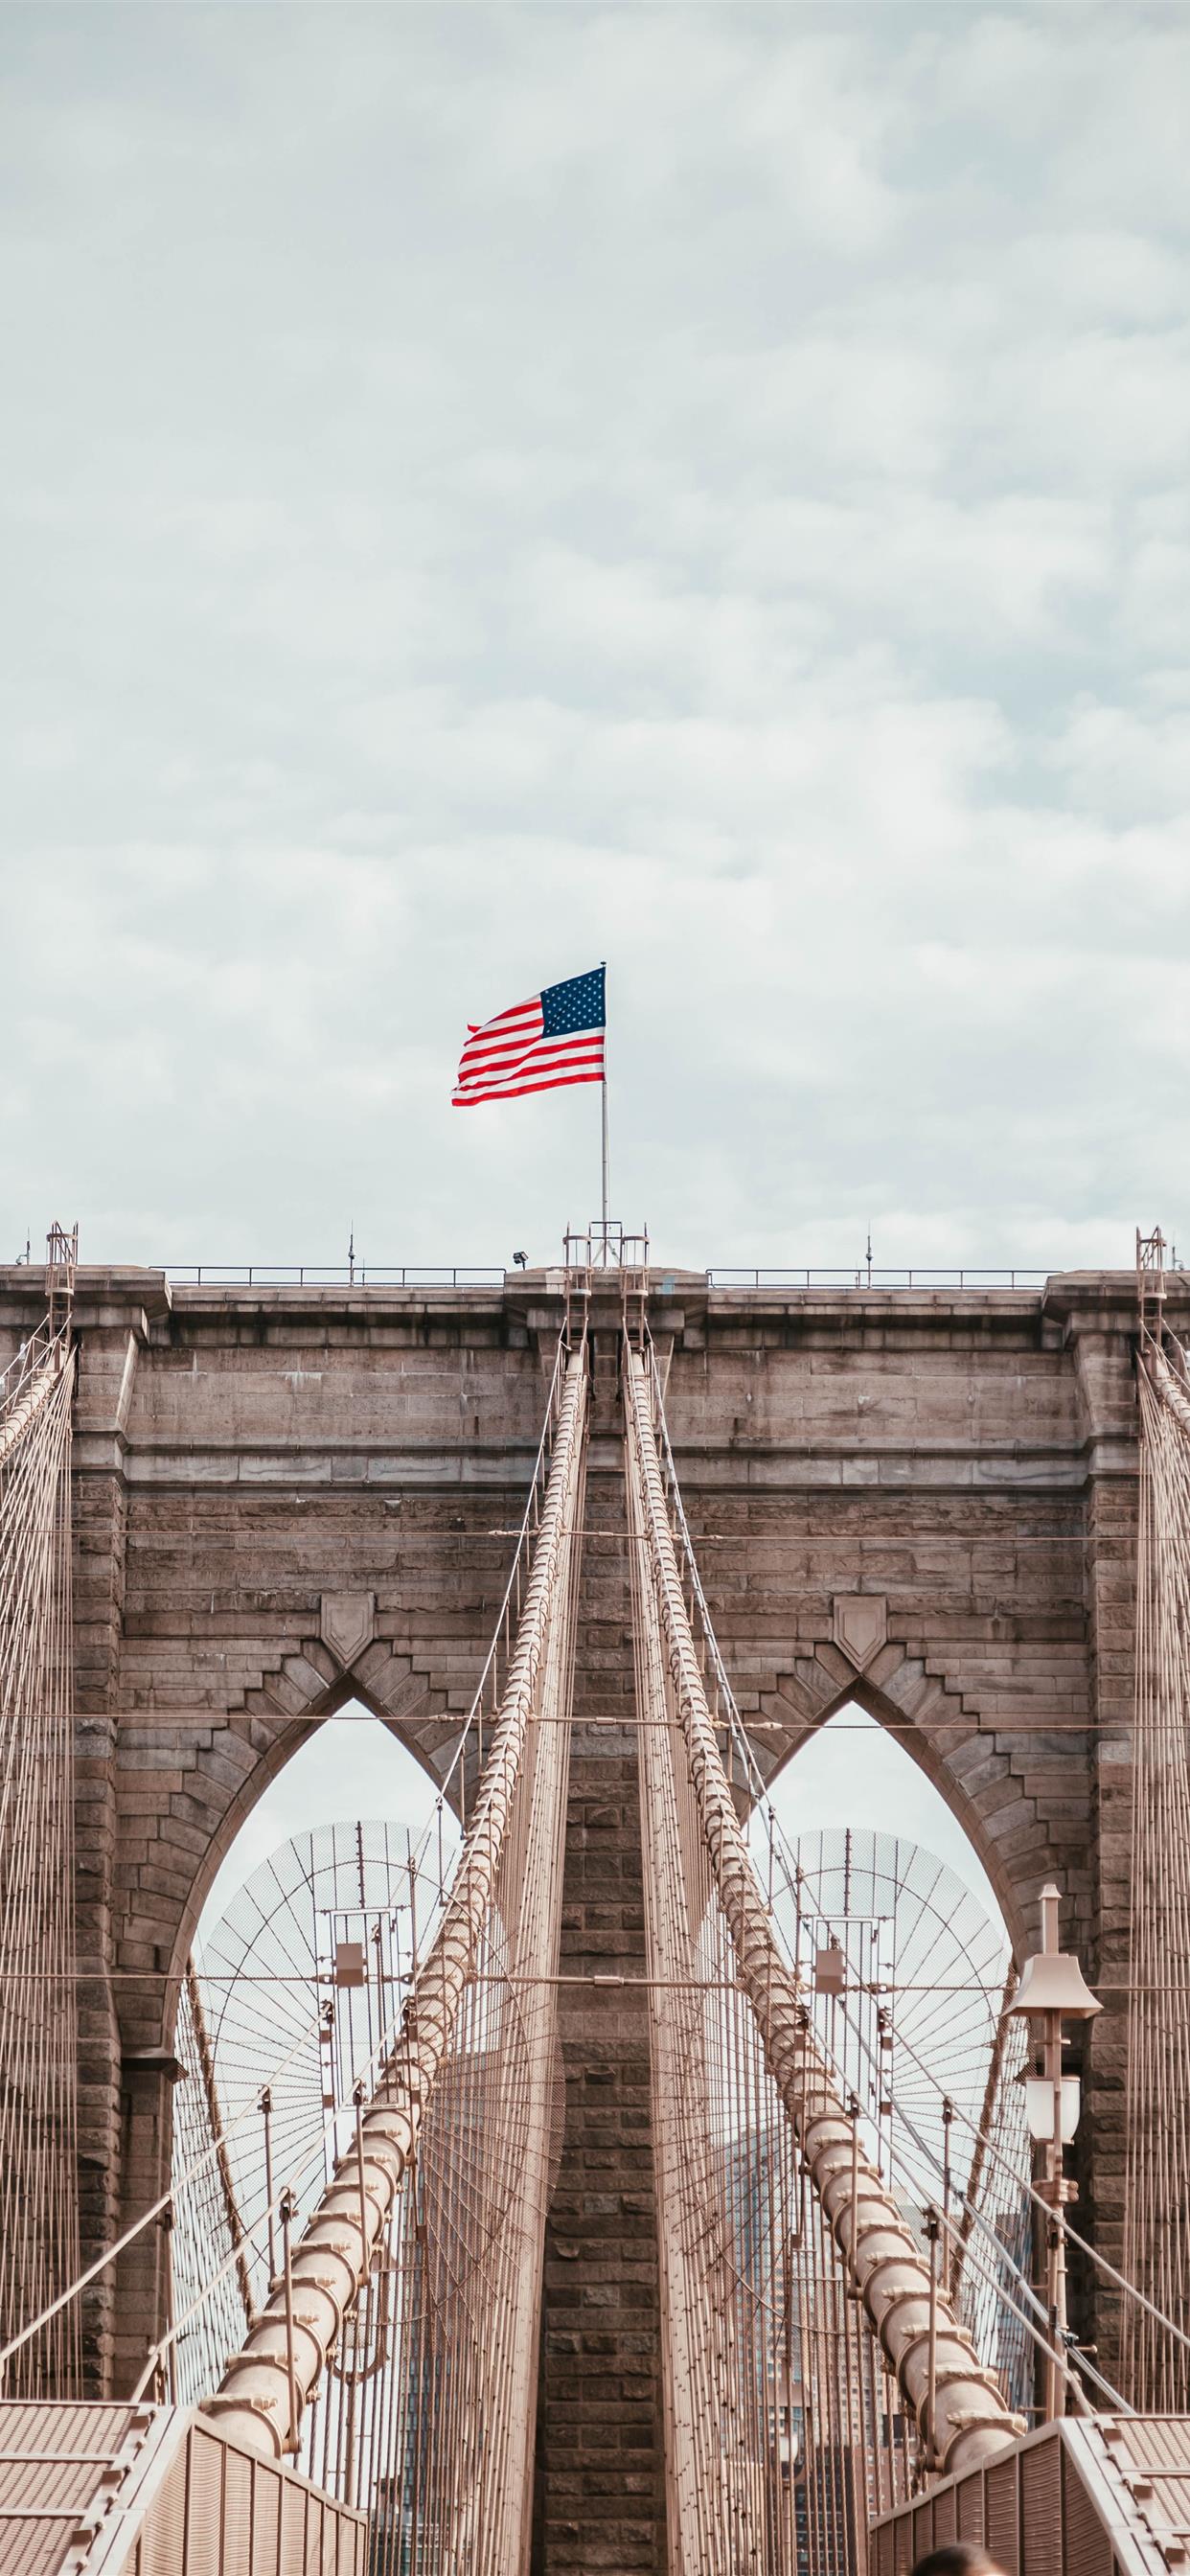 Cầu Brooklyn, một trong những biểu tượng nổi tiếng của thành phố New York, mang lại nhiều cảm hứng và hình ảnh đẹp mắt cho khán giả. Với tầm nhìn bao quát toàn cảnh và vẻ đẹp kiến trúc độc đáo, hình ảnh này sẽ mang lại cho bạn một trải nghiệm khó quên về địa điểm nổi tiếng hấp dẫn này. 